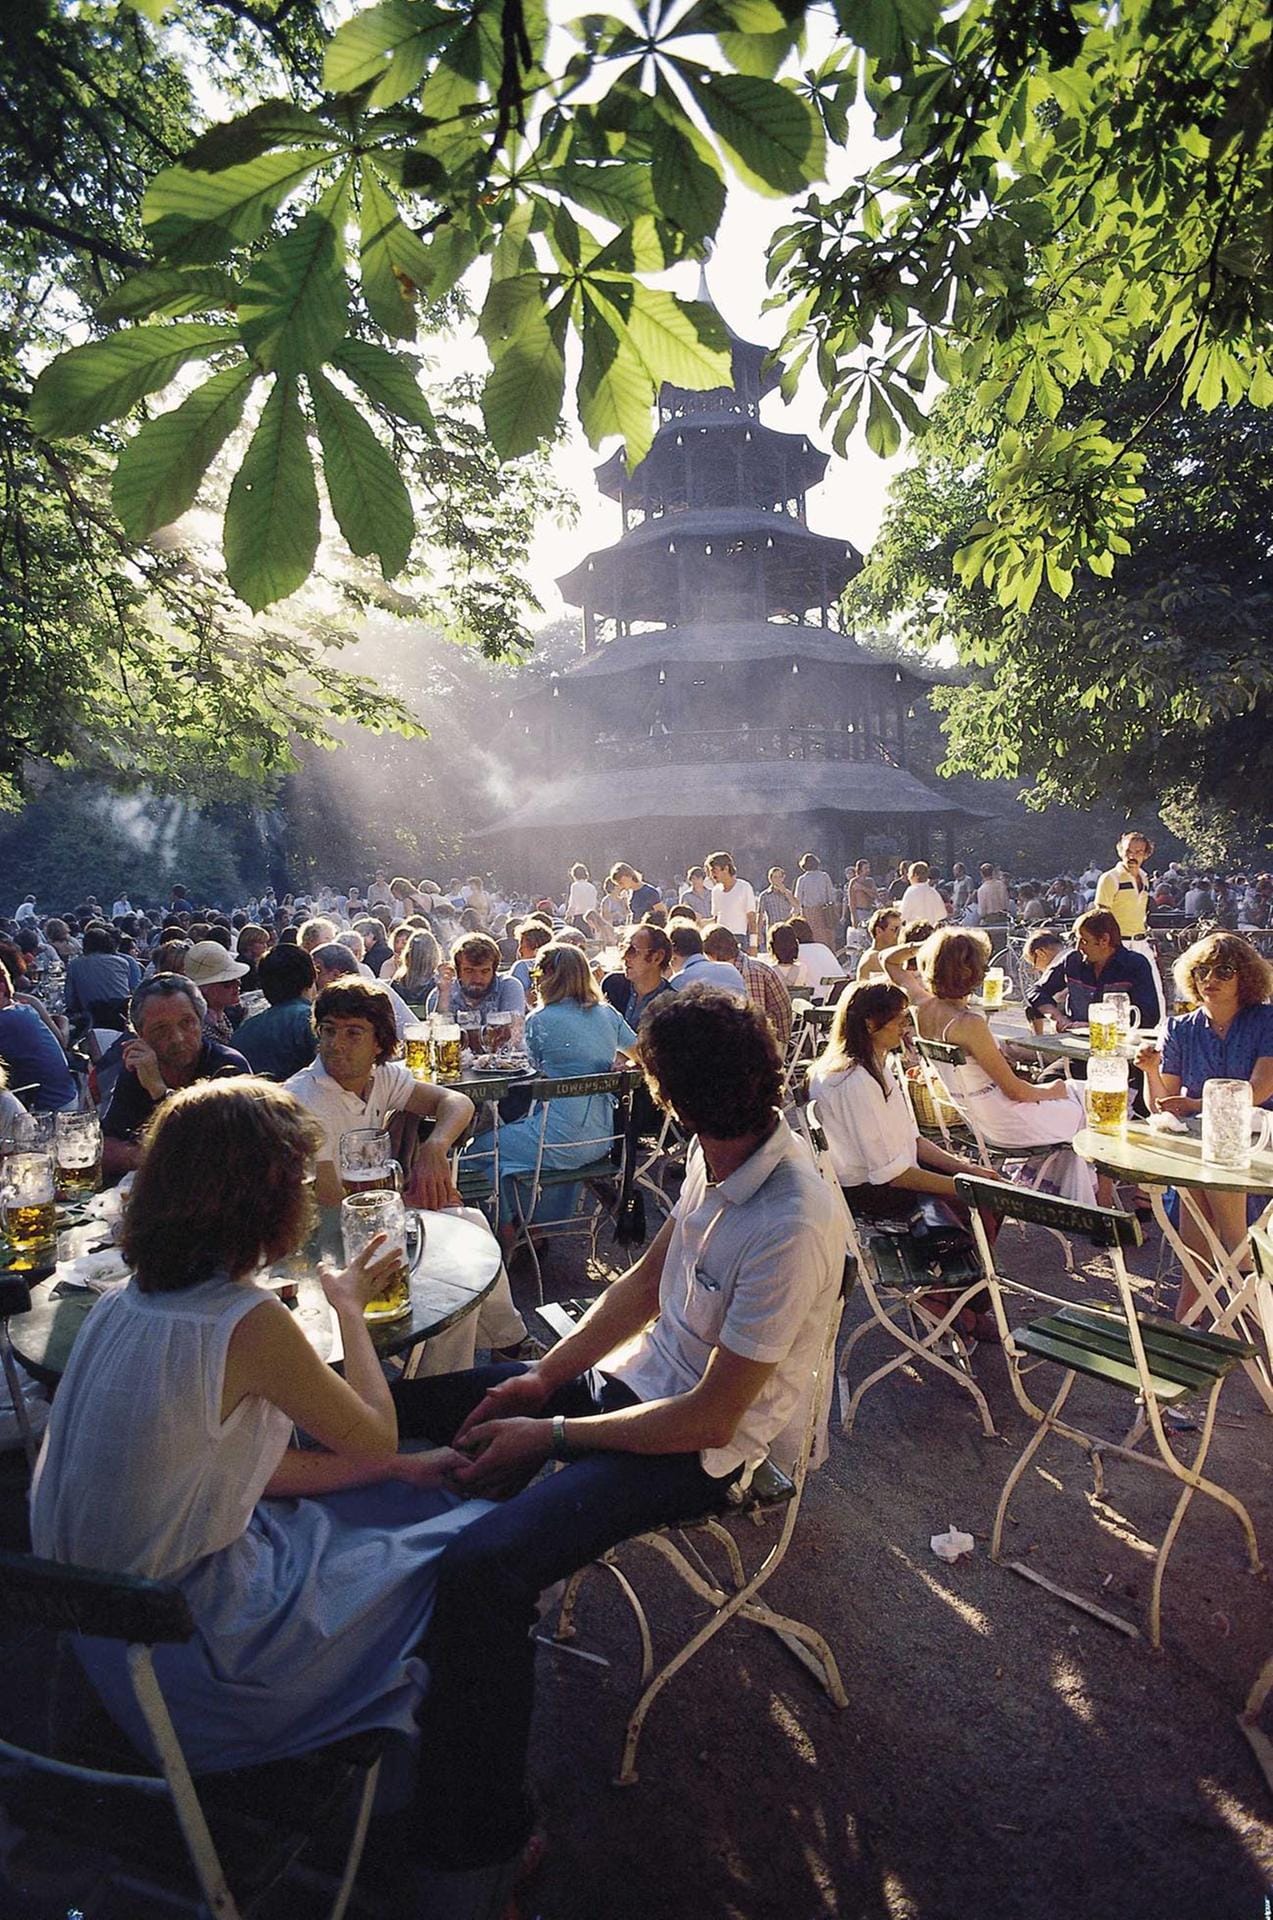 München-Touristen besuchen in der "nördlichsten Stadt Italiens" gern den Biergarten am Chinesischen Turm im Englischen Garten.